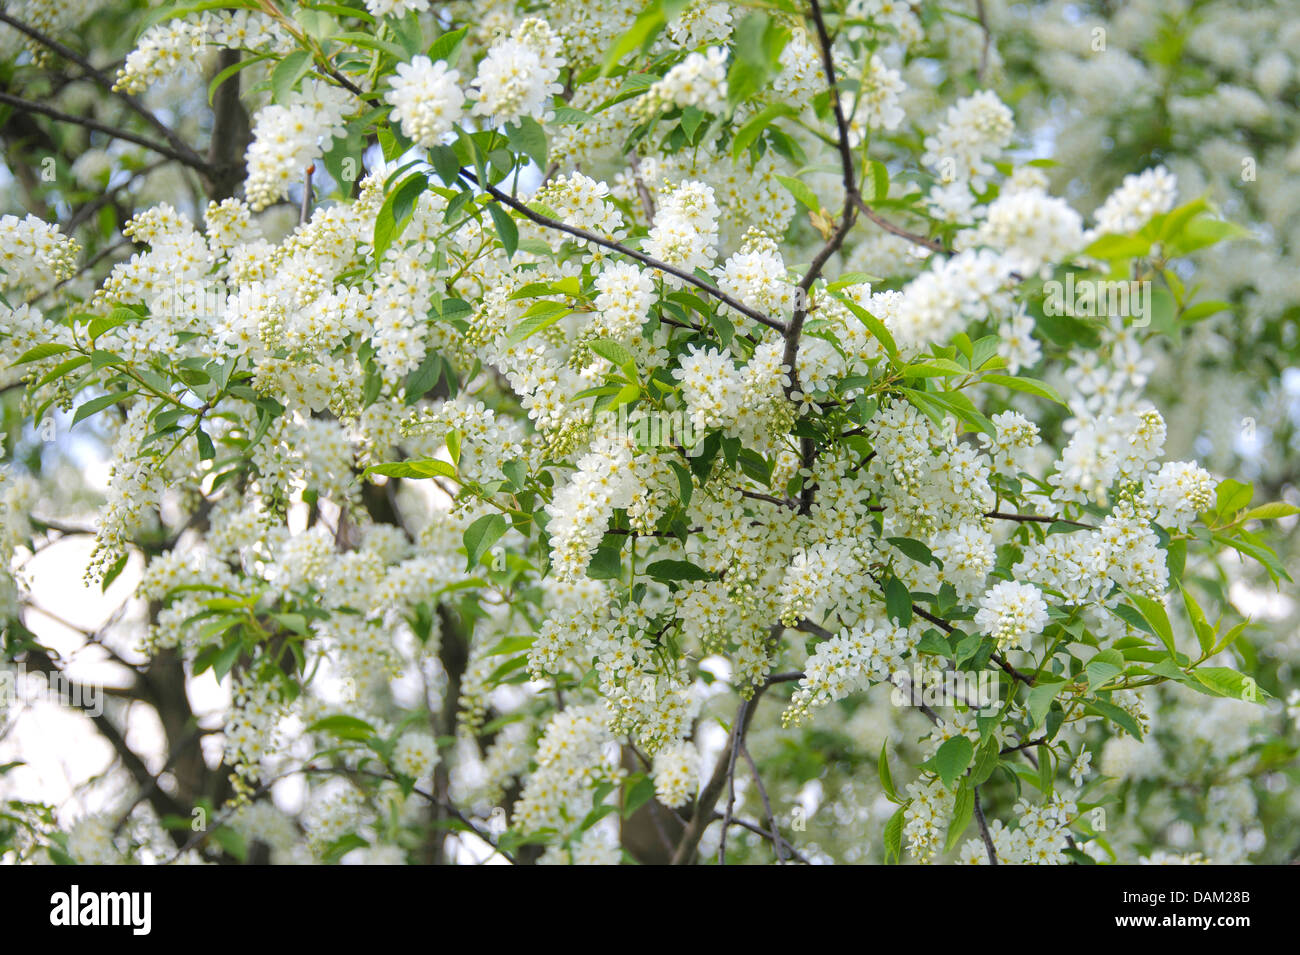 European bird cherry (Prunus padus, Padus avium), blooming branches, Germany Stock Photo